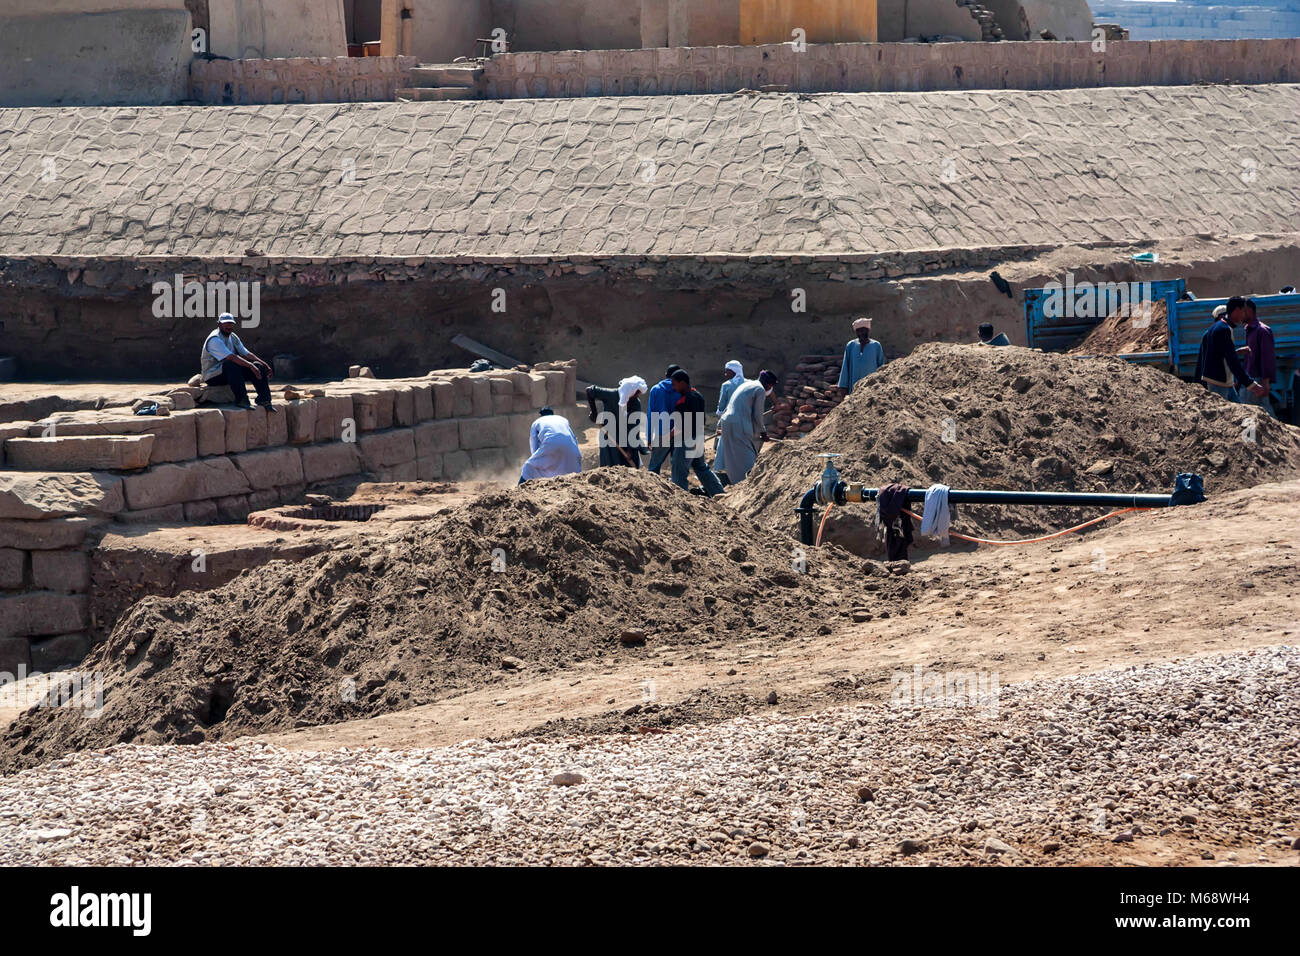 LUXOR, ÄGYPTEN - 17. FEBRUAR 2010: Arbeitnehmer bei der Ausgrabungsstätte in Luxor, Ägypten Stockfoto